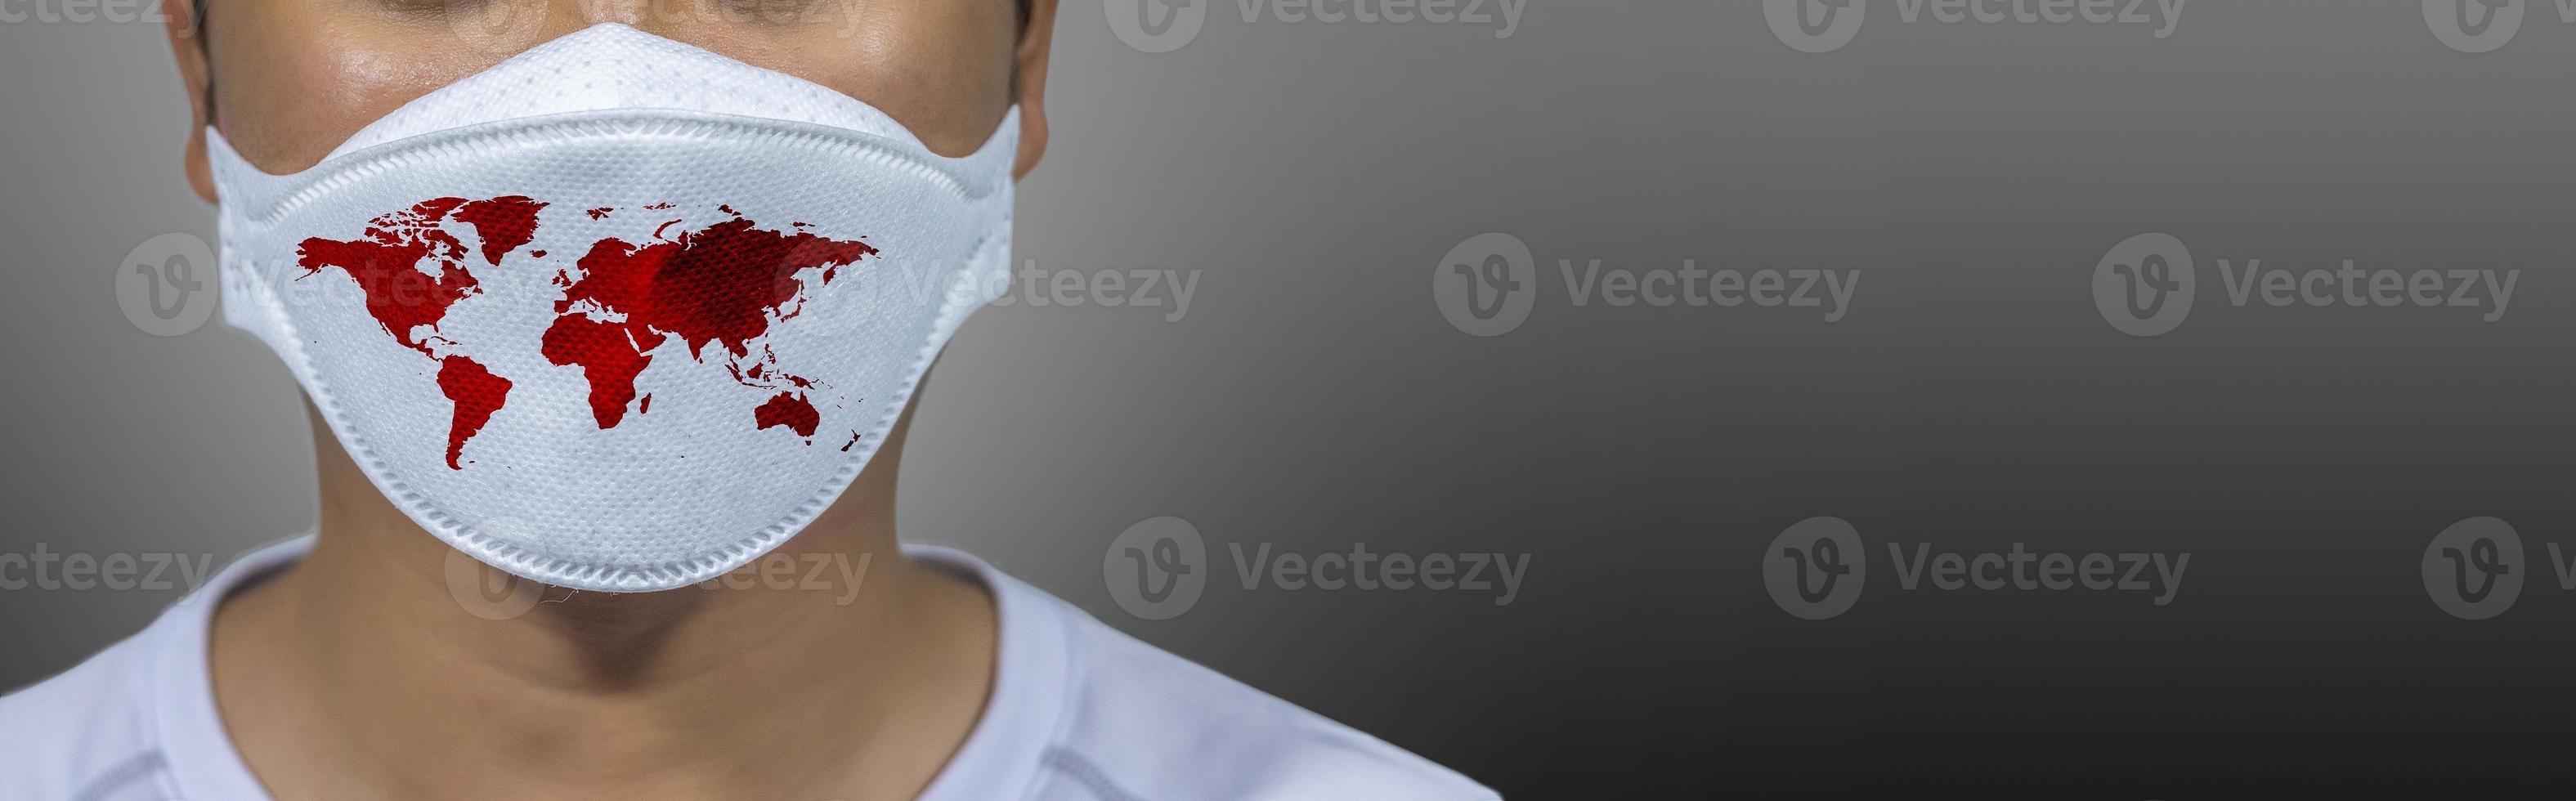 protection contre les virus covid 19 le monde porte un masque pour lutter contre le virus corona. le concept de lutte contre les virus dans le monde photo